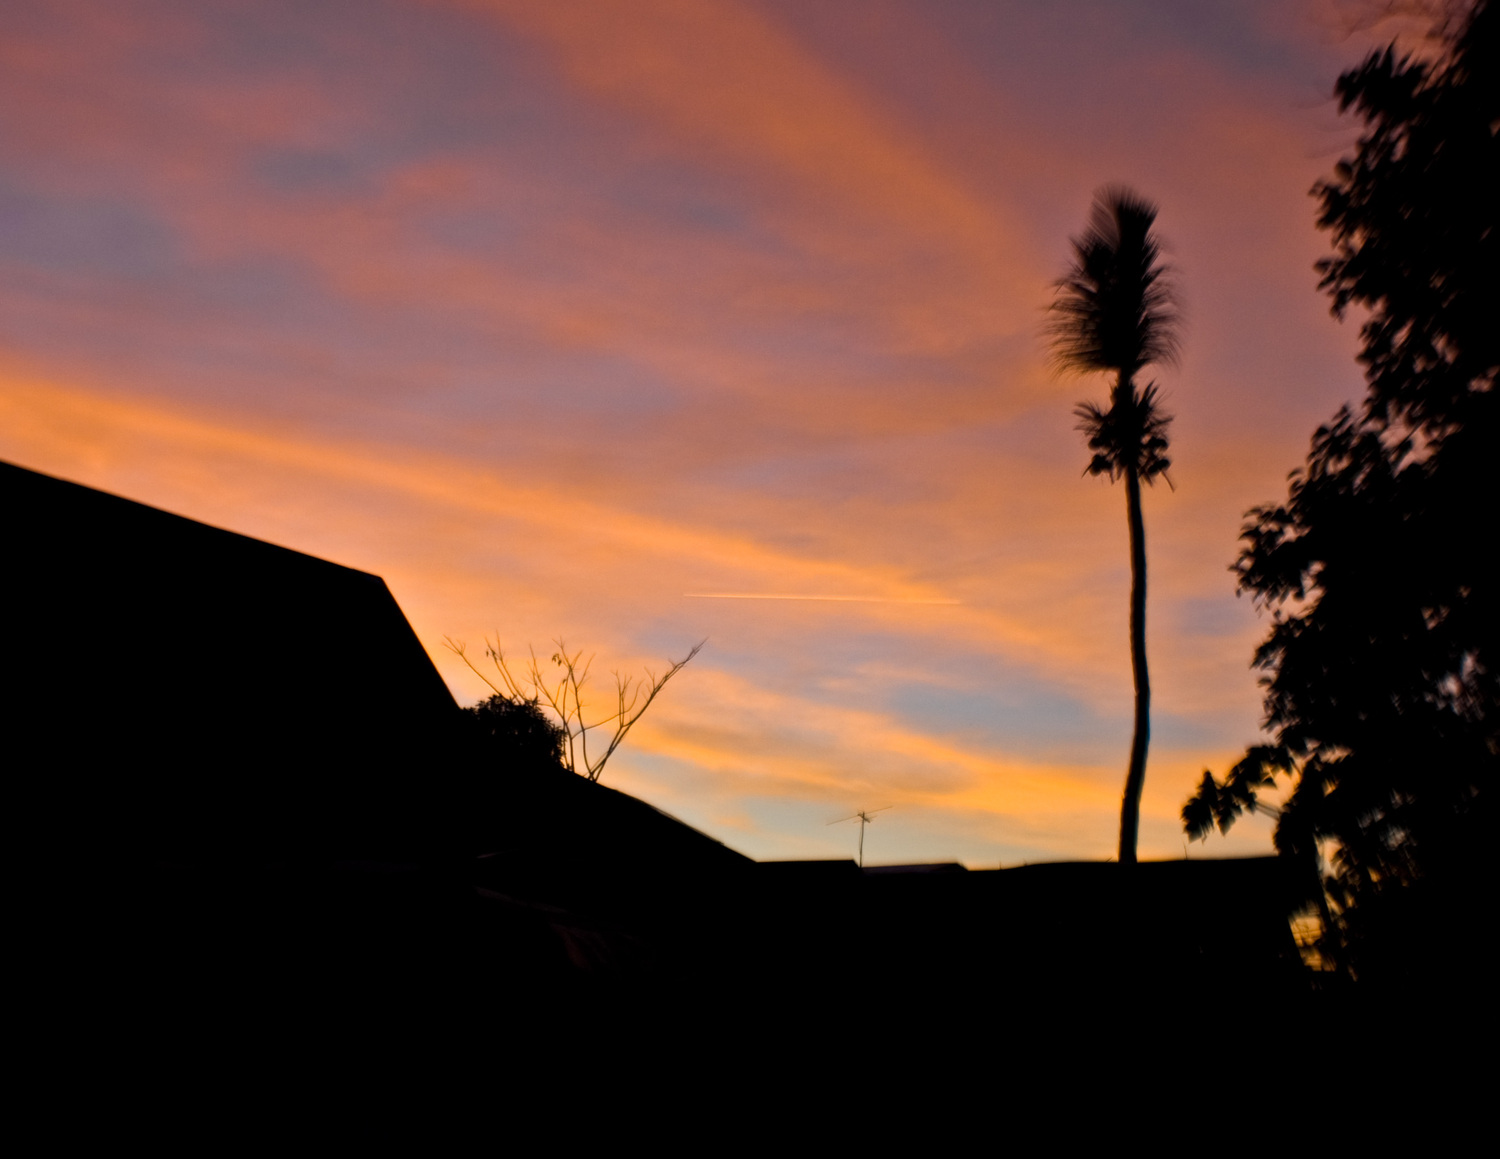 Закат в Матабункае. Высокое дерево - кокосовая пальма с сильно подрезанными листьями.